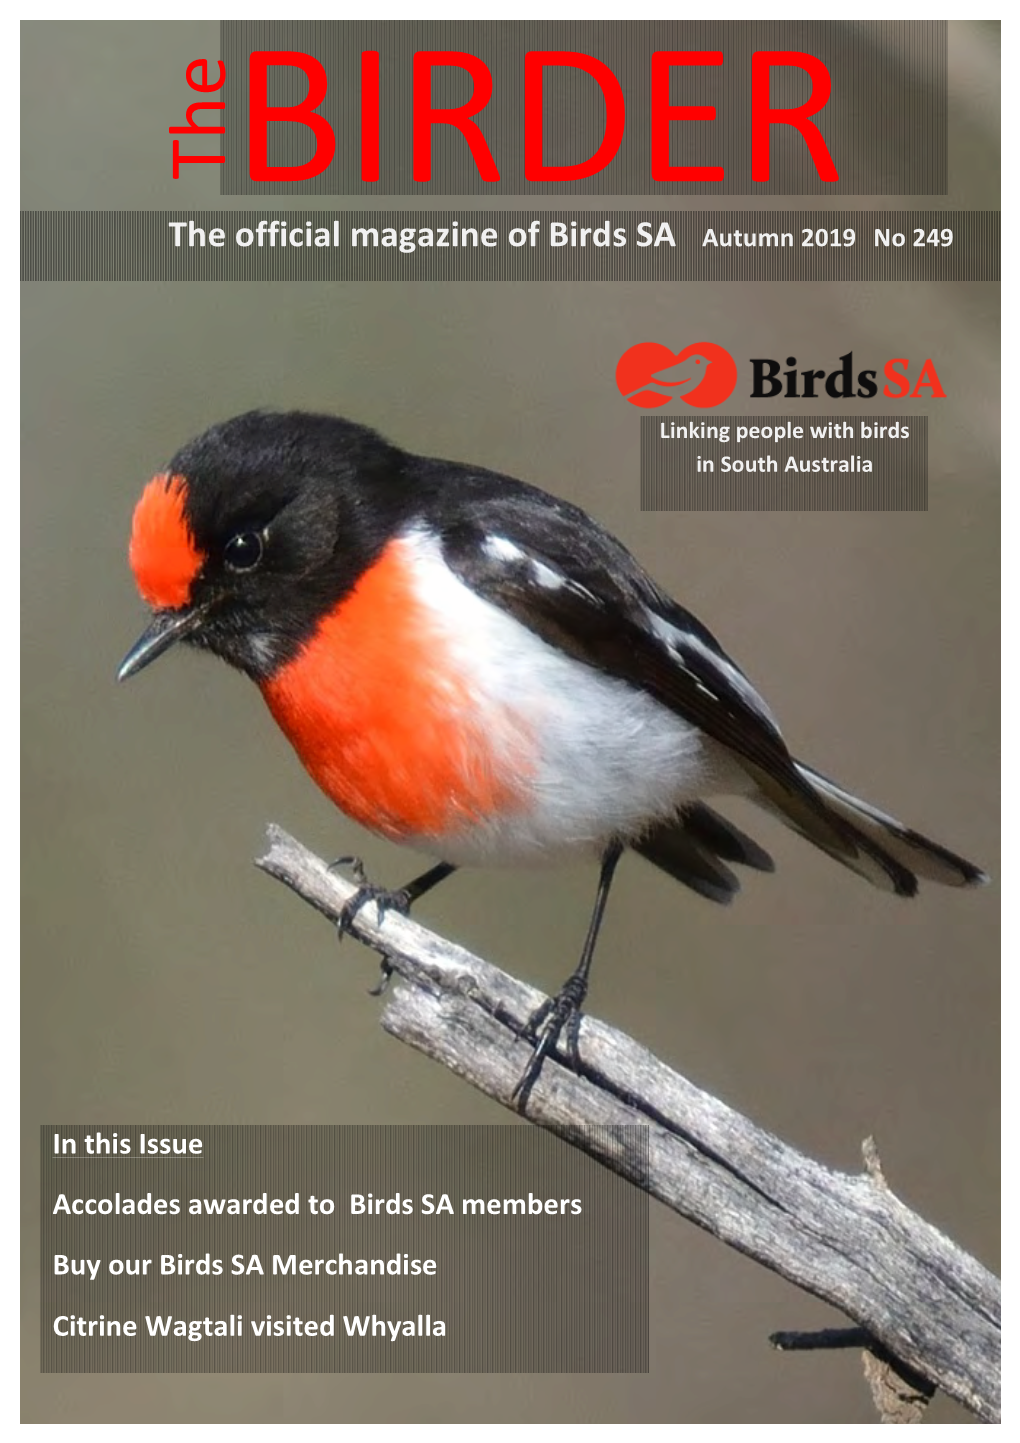 The Official Magazine of Birds SA Autumn 2019 No 249